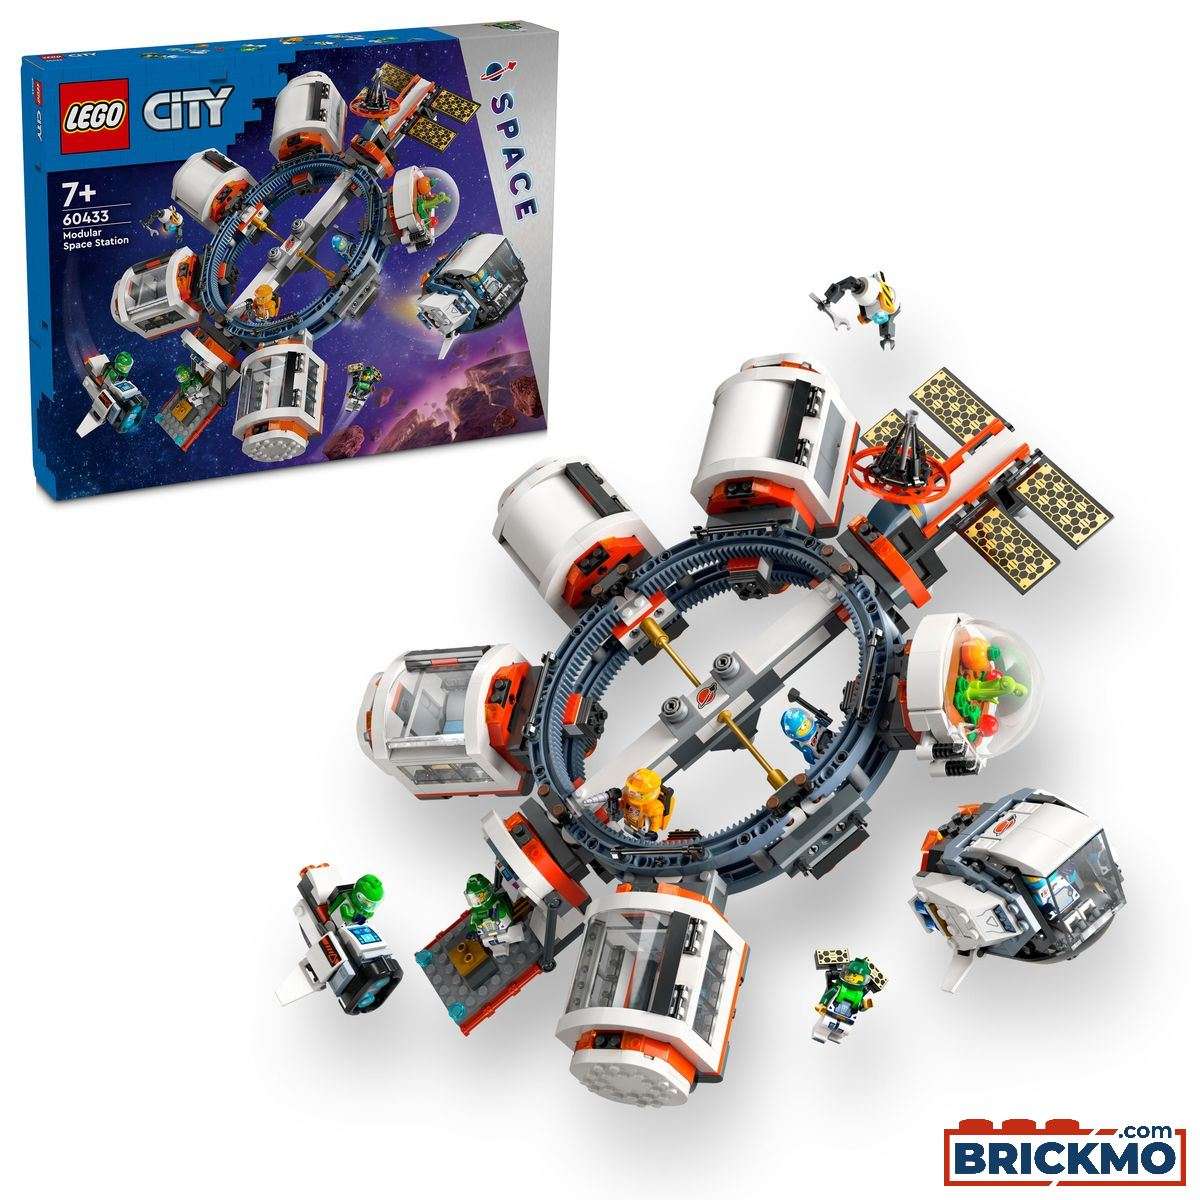 LEGO City 60433 Modulair ruimtestation 60433